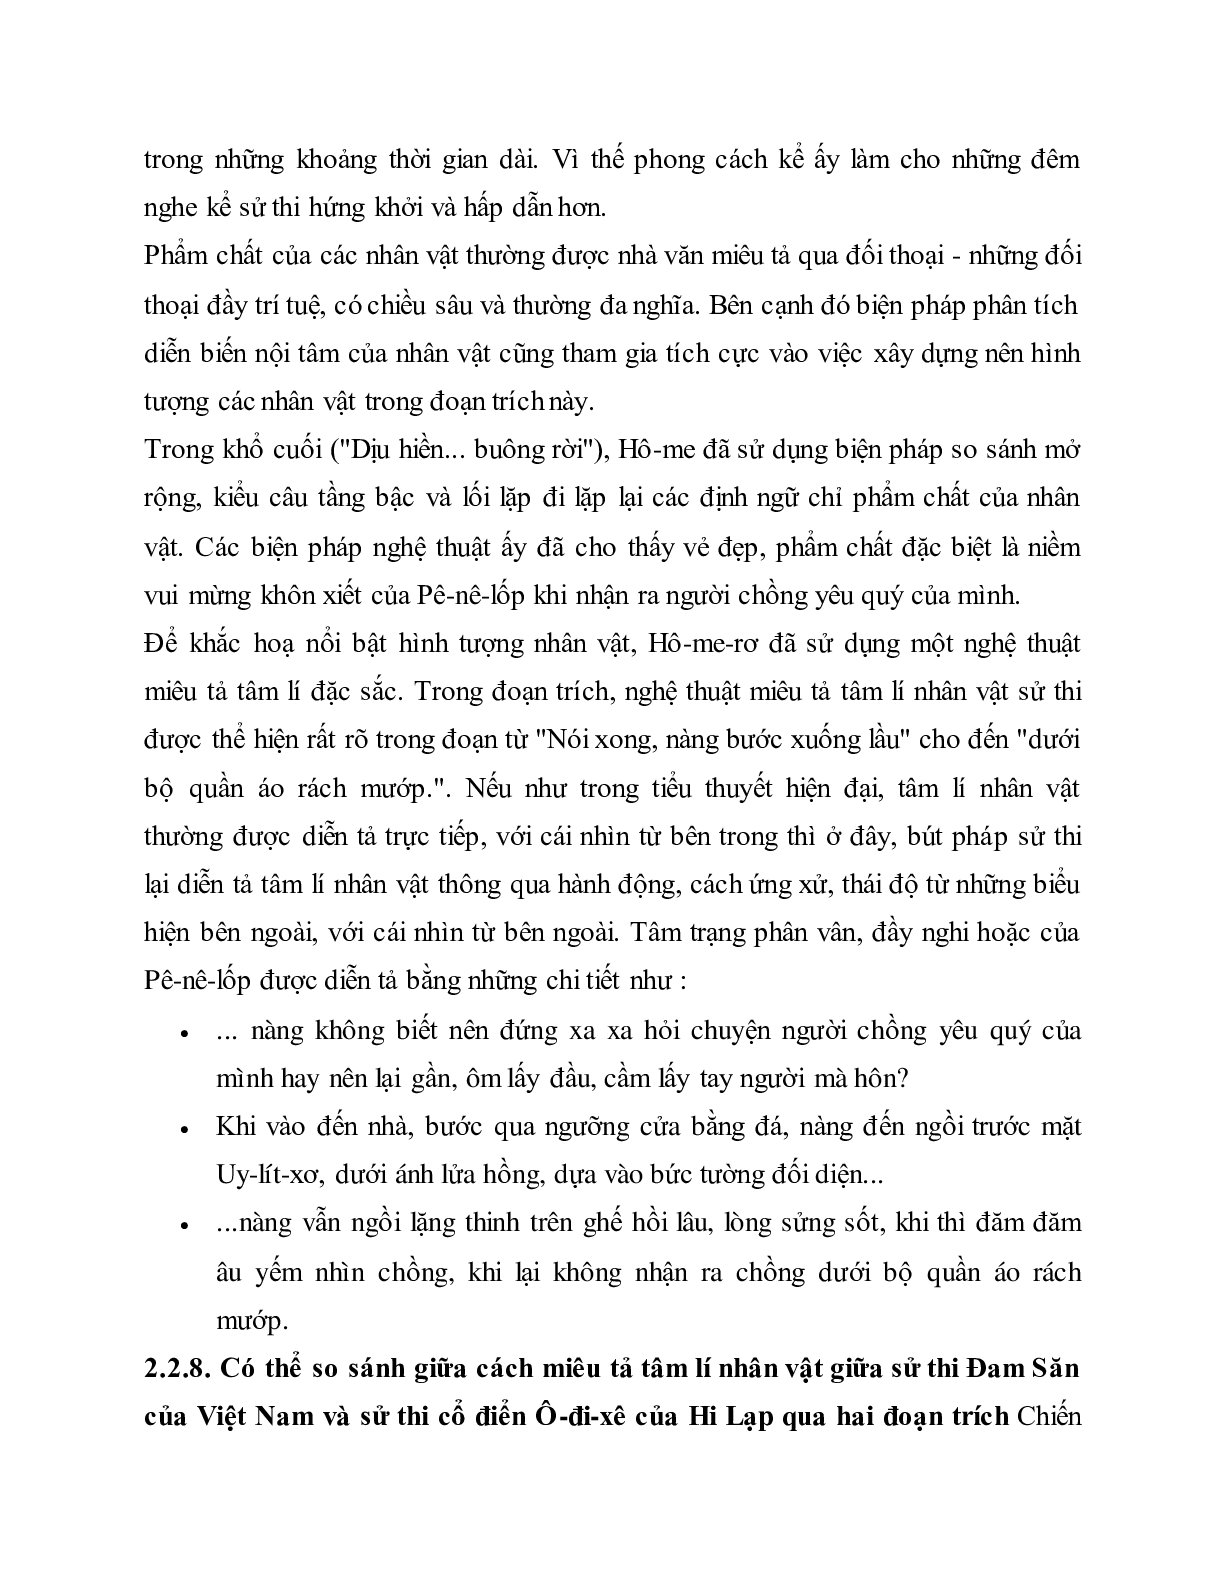 Soạn bài Uy-Lít-Xơ trở về - ngắn nhất Soạn văn 10 (trang 6)